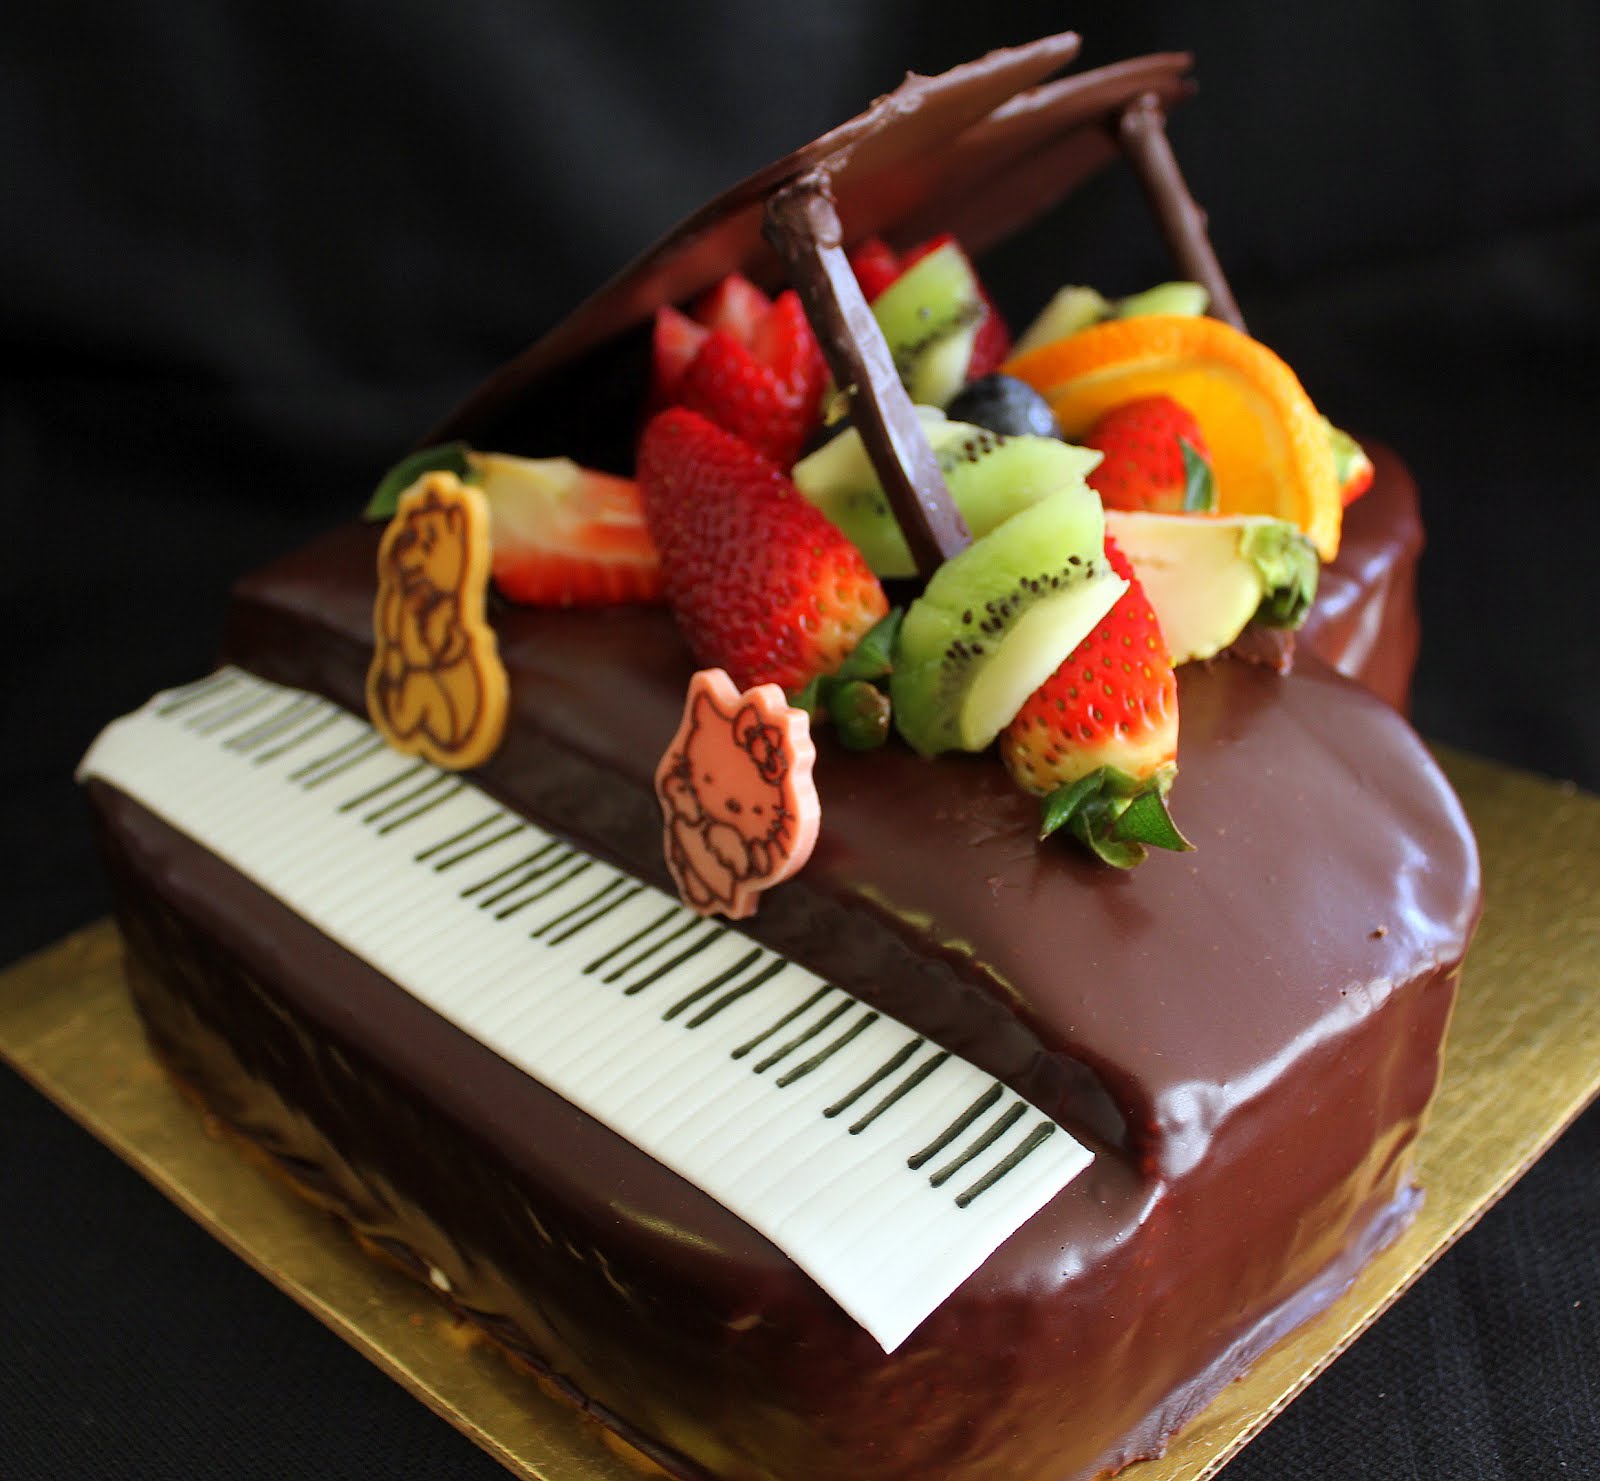 在钢琴和大提琴形状的蛋糕 库存照片. 图片 包括有 幸福, 设计, 隐喻, 食物, 喜悦, 蛋糕, 大提琴 - 64524026